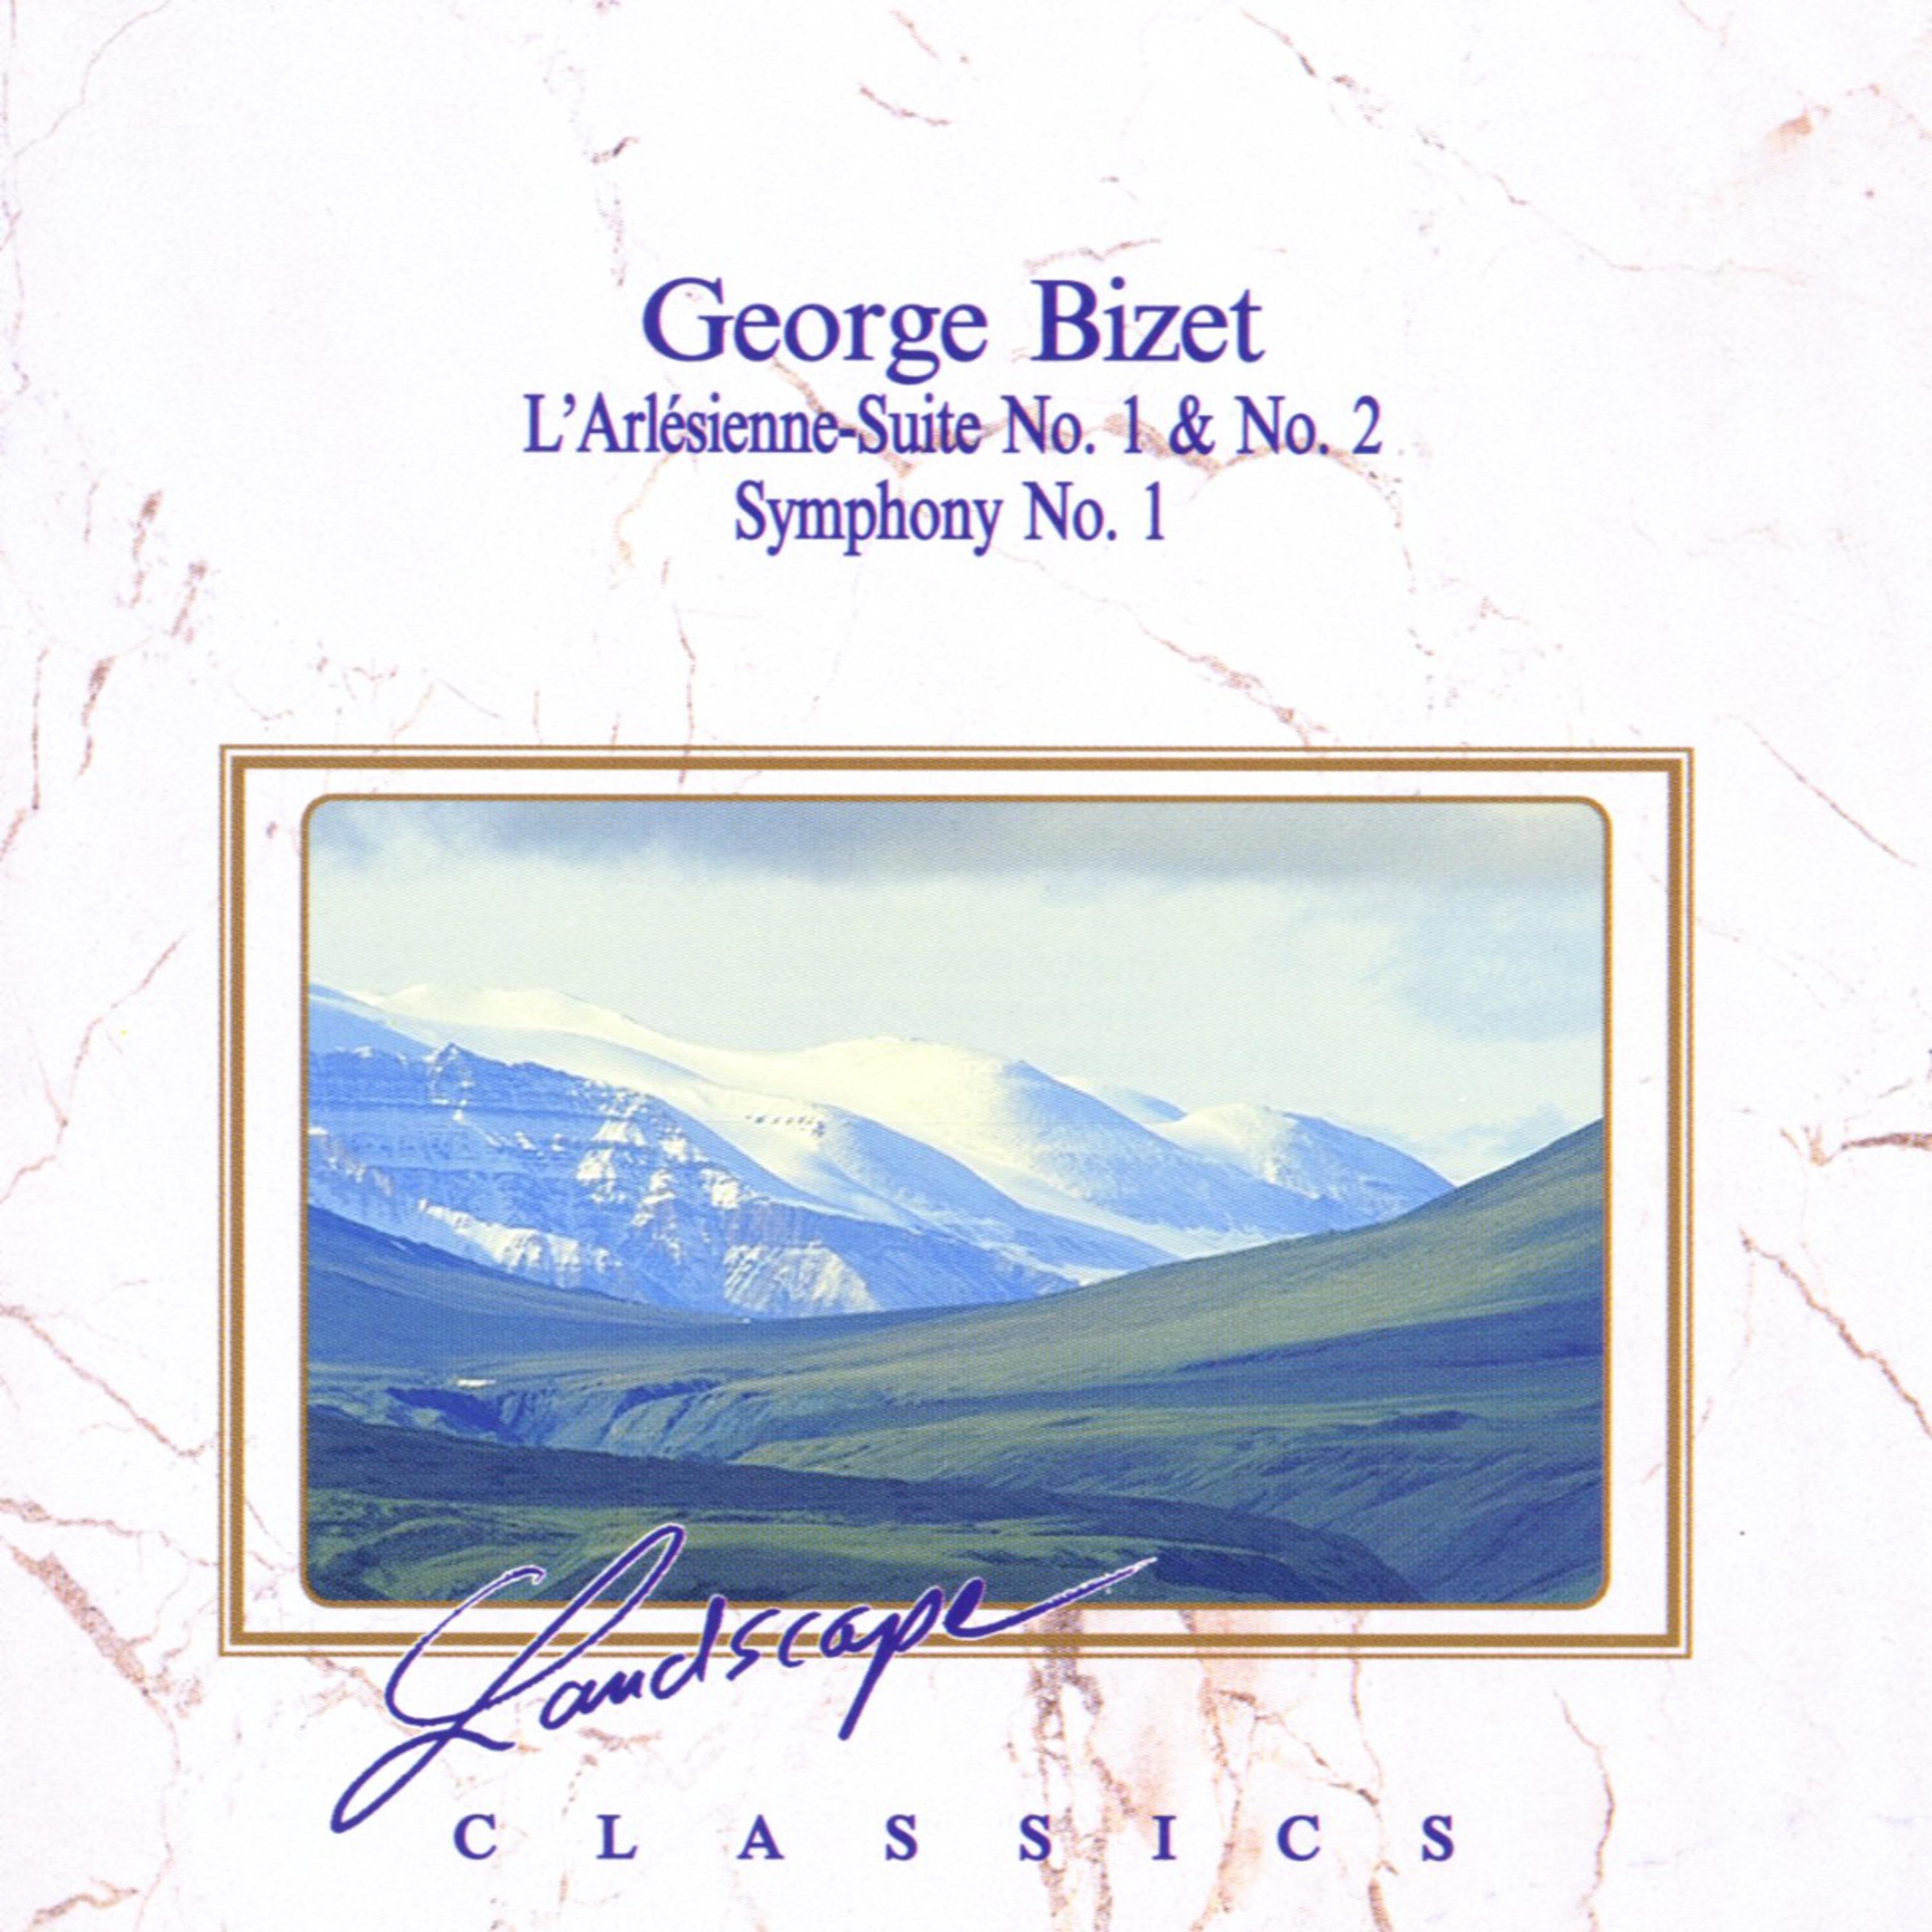 Georg Bizet: L' Ale sienneSuite No. 1, No. 2  Symphony No. 1